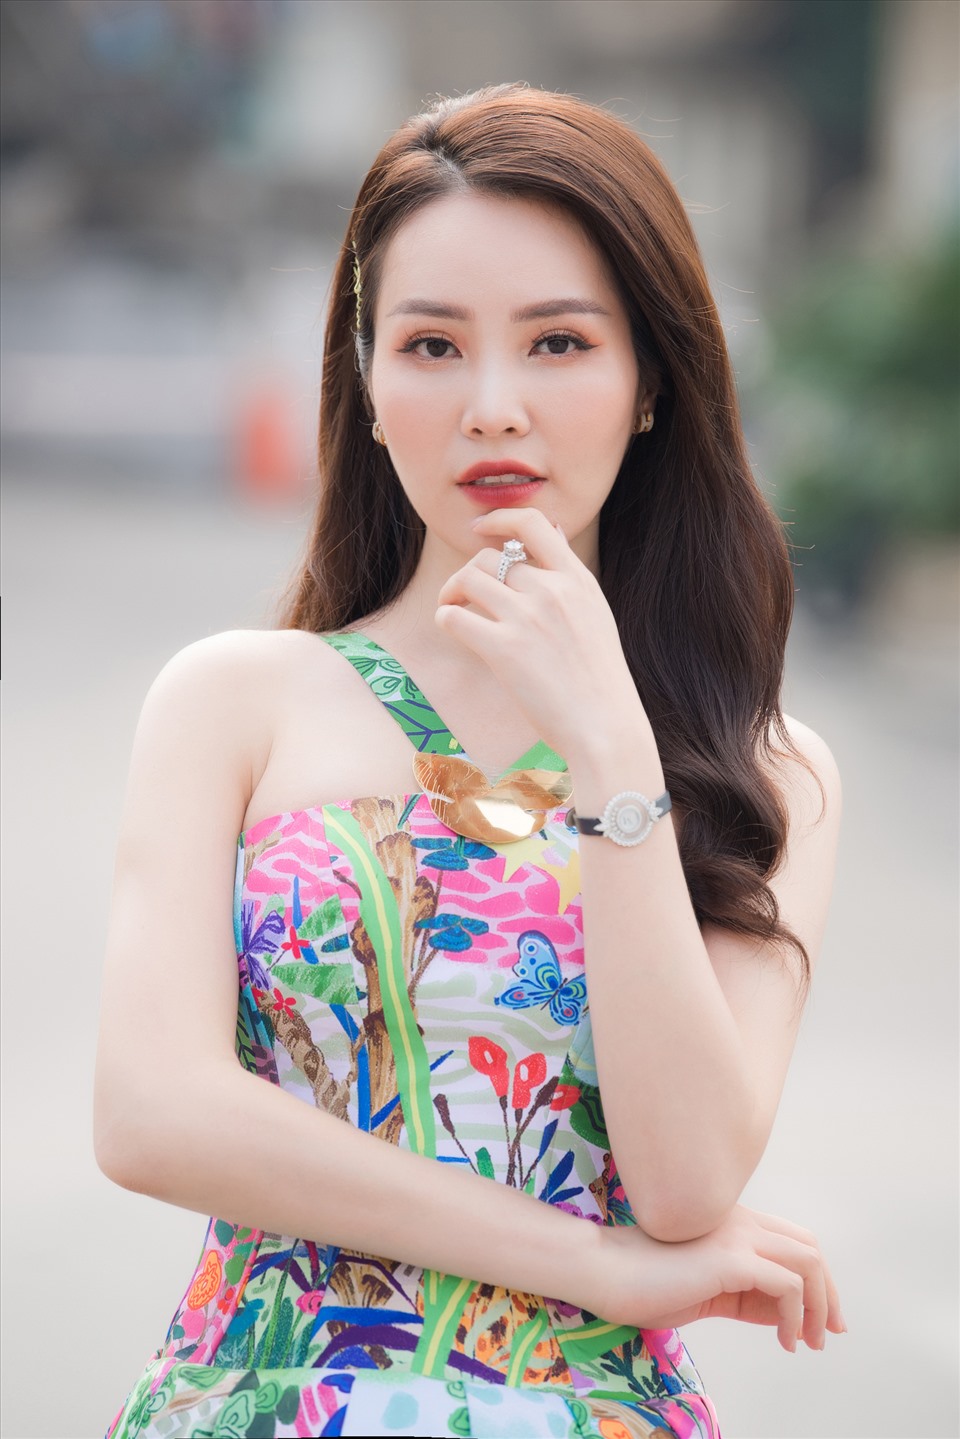 Á hậu Thuỵ Vân sinh năm 1986, tại Hà Nội. Sau khi giành ngôi vị Á hậu 2 tại Hoa hậu Việt Nam 2008, cô không tham gia các hoạt động giải trí mà chuyên tâm vào công việc MC/ BTV. Ảnh: Vũ Toàn.